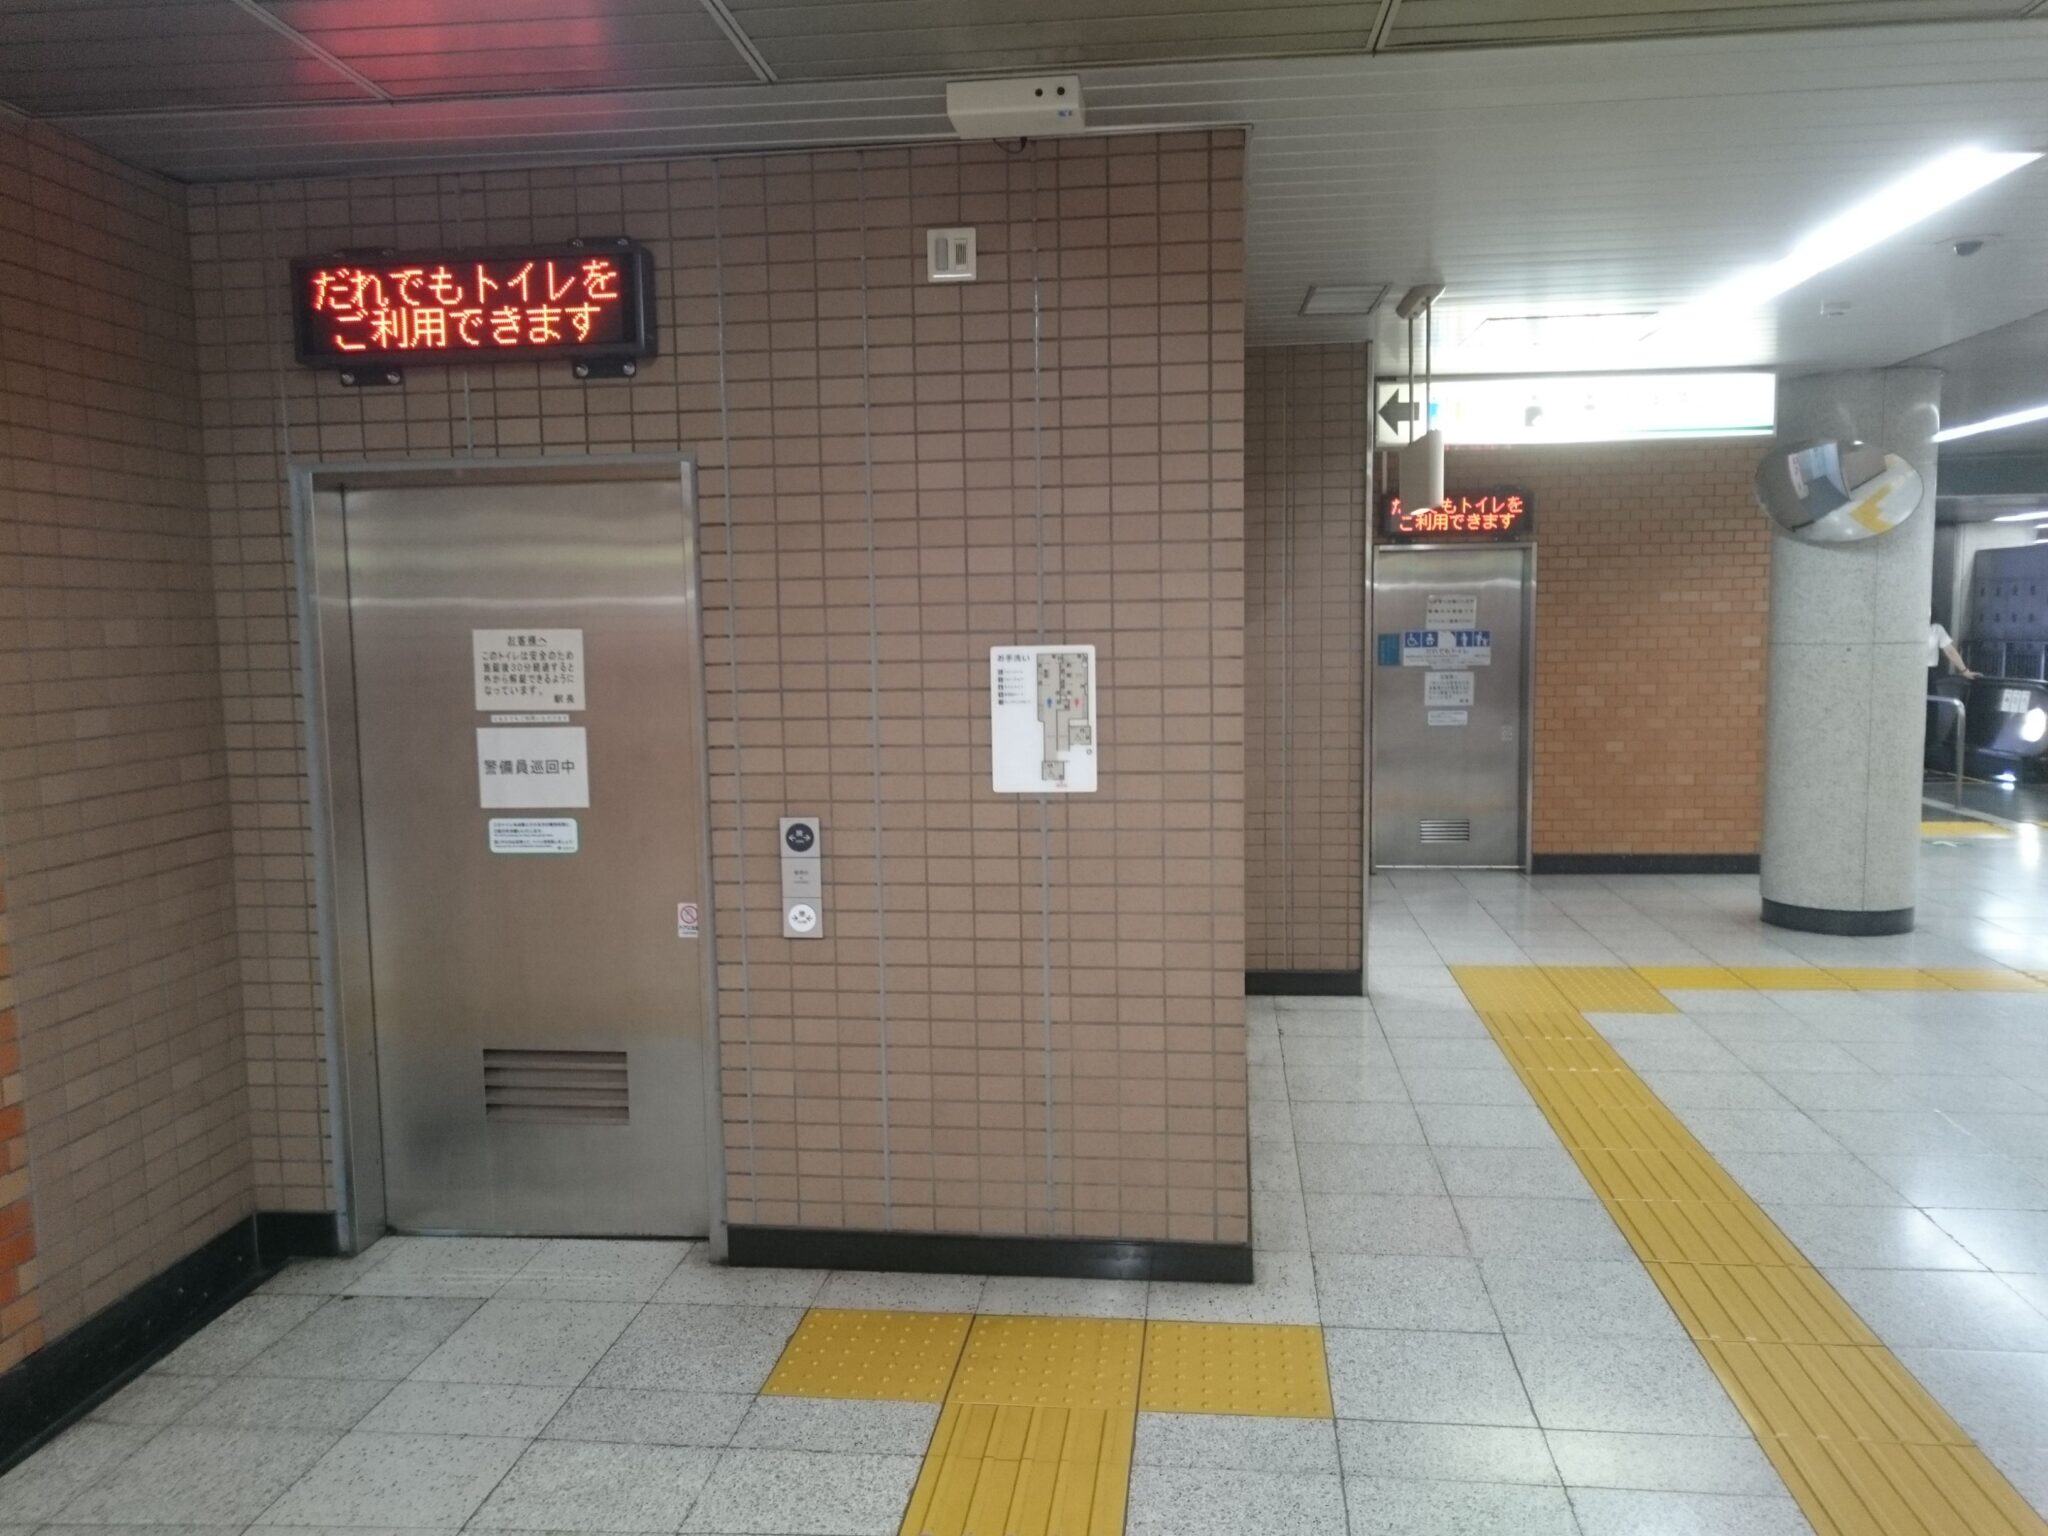 新宿三丁目駅(都営) トイレペディア